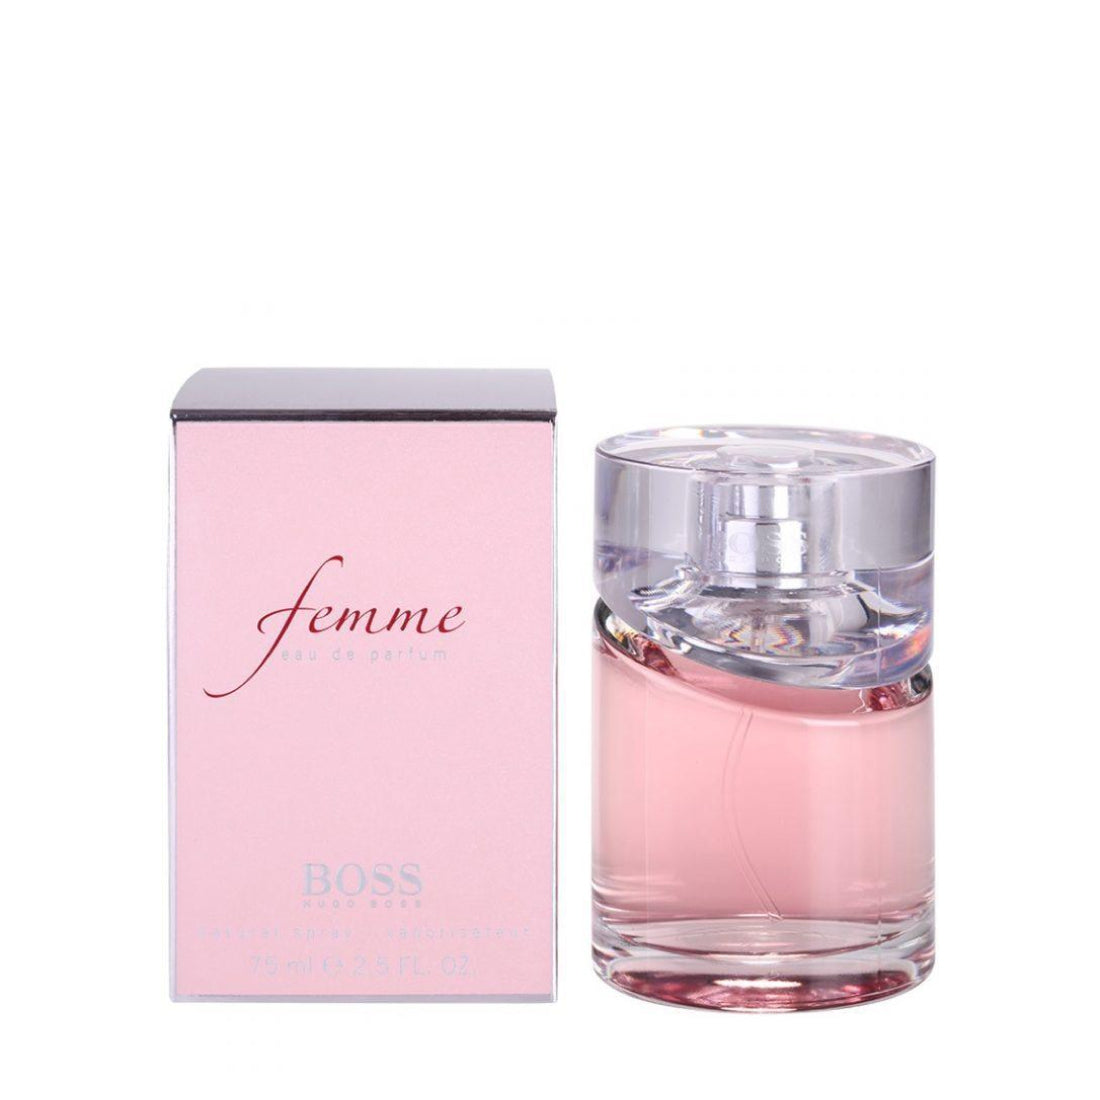 Boss Femme Women Hugo Boss Eau de Parfum Spray 2.5 oz Perfume Outlet